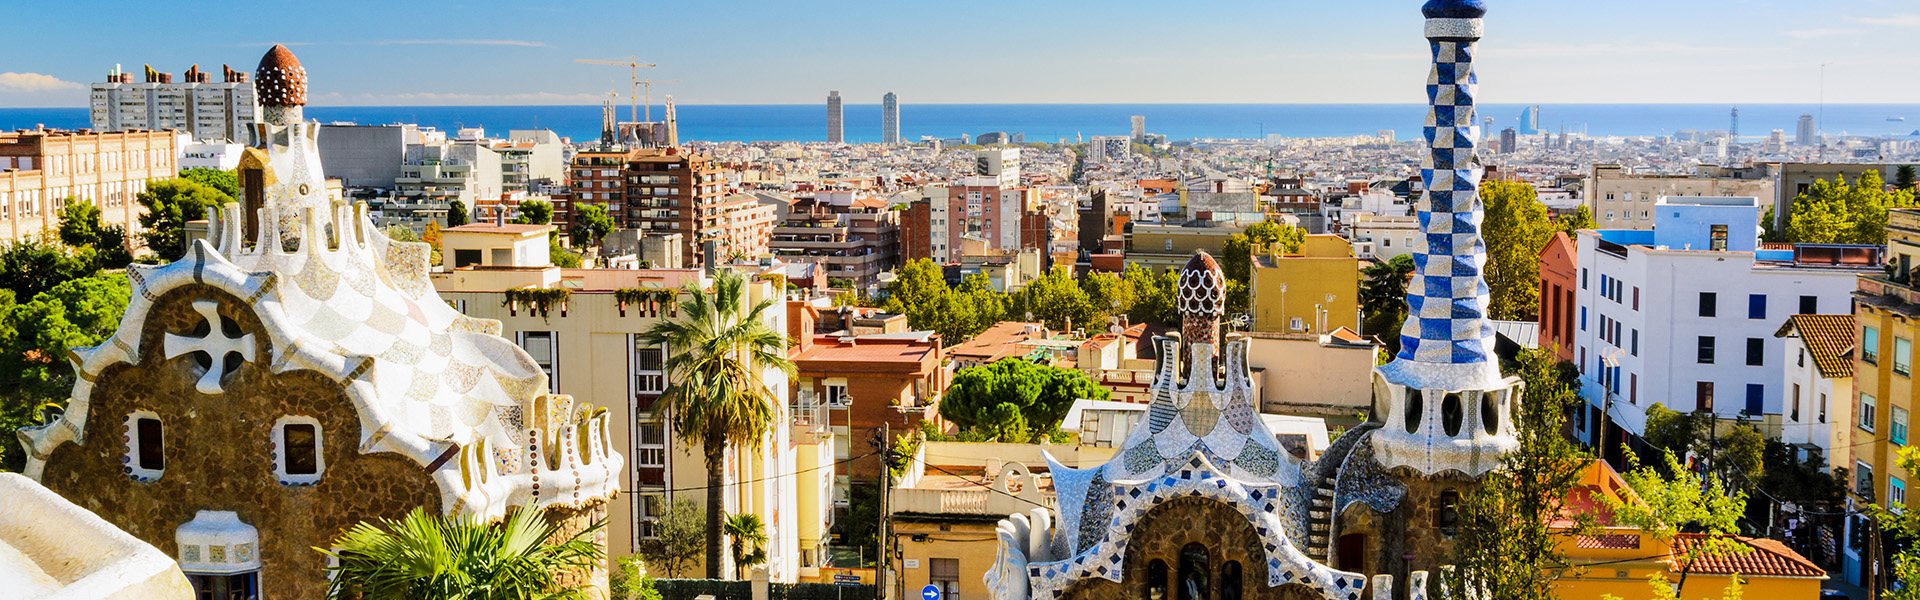 Idee per il Ponte dei Morti: visitare la Barcellona di Gaudì